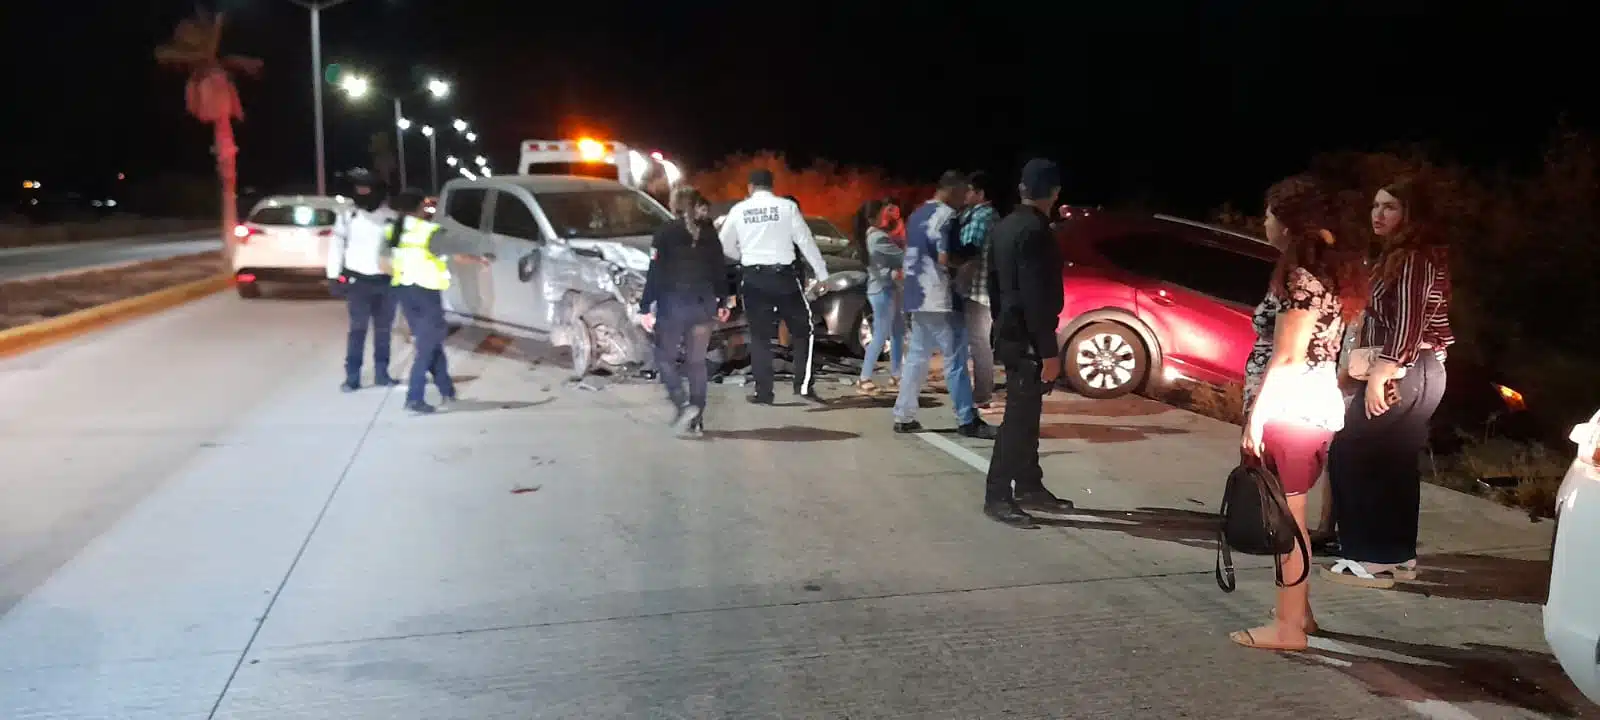 Catorce lesionados resultan de carambola por la carretera Los Mochis-Topolobampo 